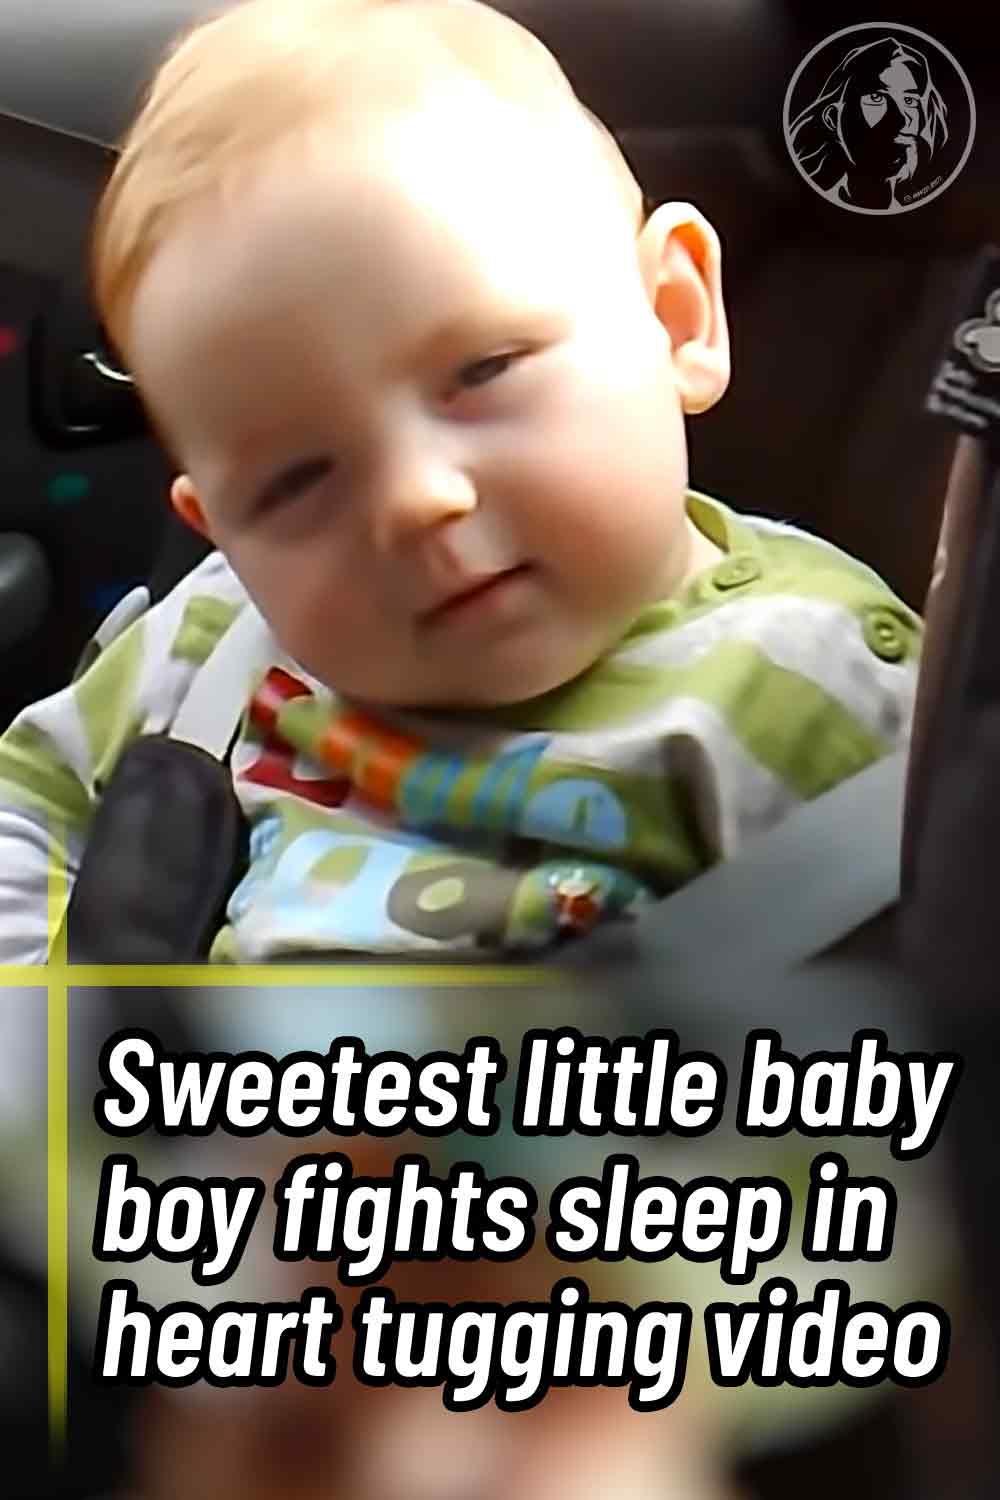 Sweetest little baby boy fights sleep in heart tugging video